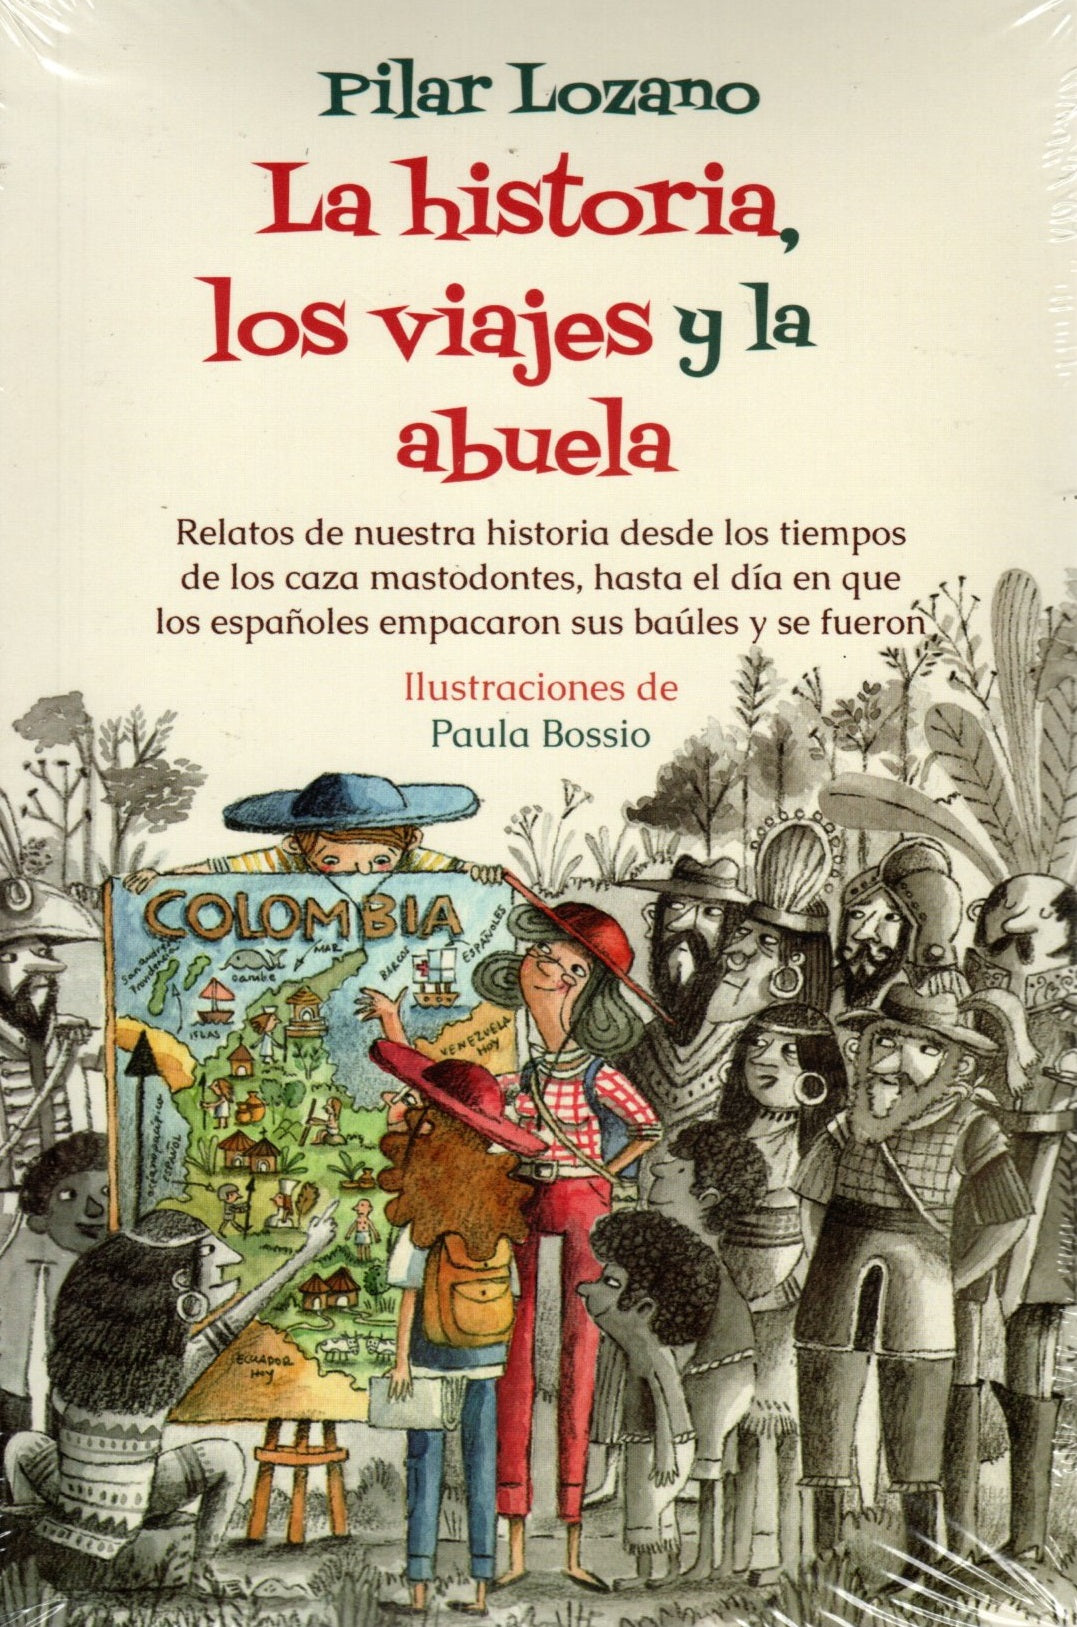 Libro Pilar Lozano - La historia, los viajes y la abuela